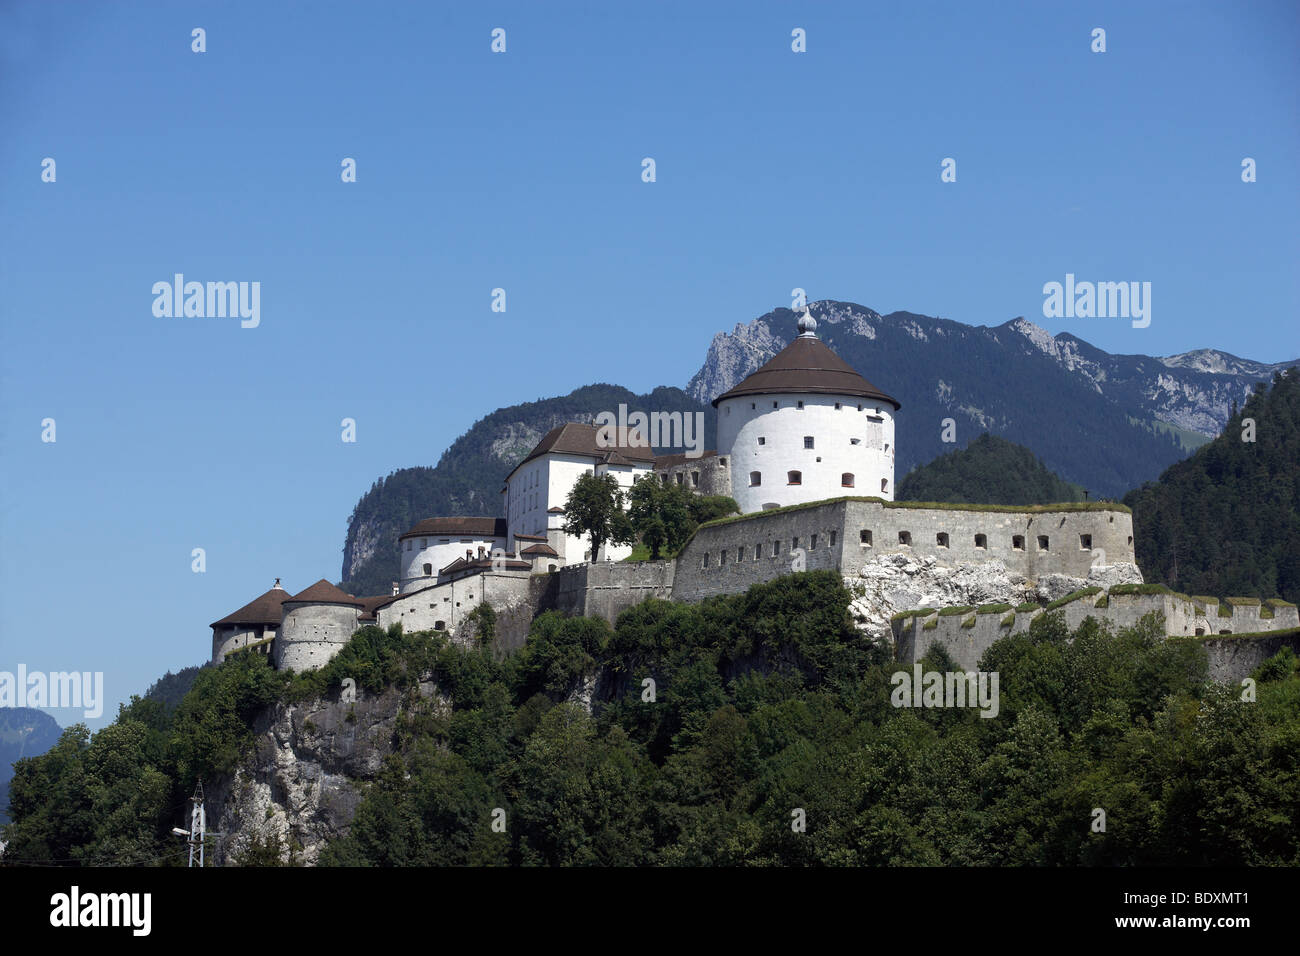 El Festung Kufstein castillo, Kufstein, Austria, Europa Foto de stock